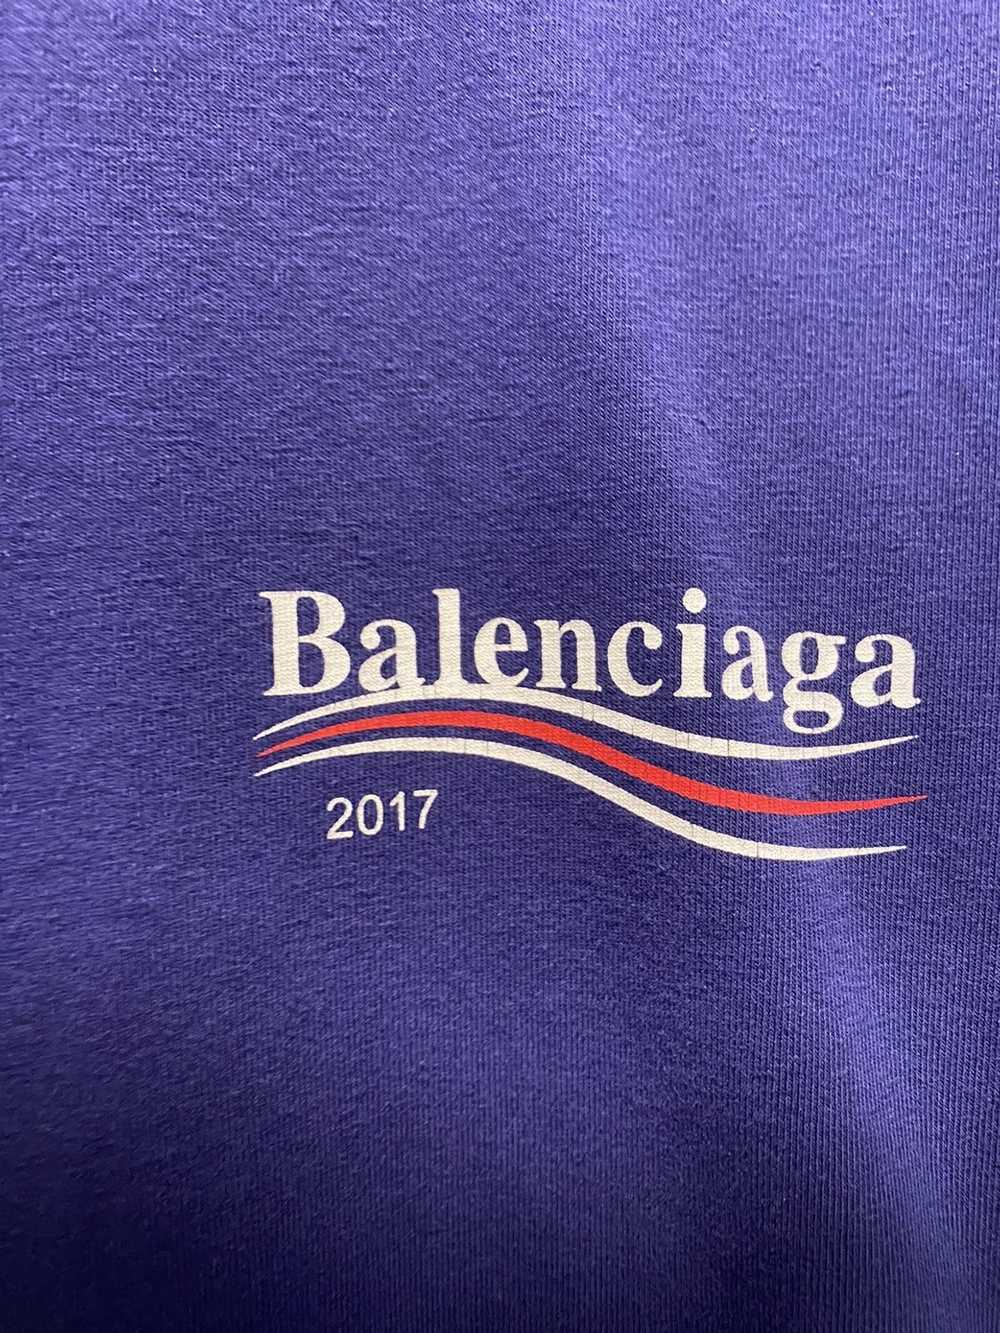 Balenciaga Balenciaga Campaign Logo Tee - image 4